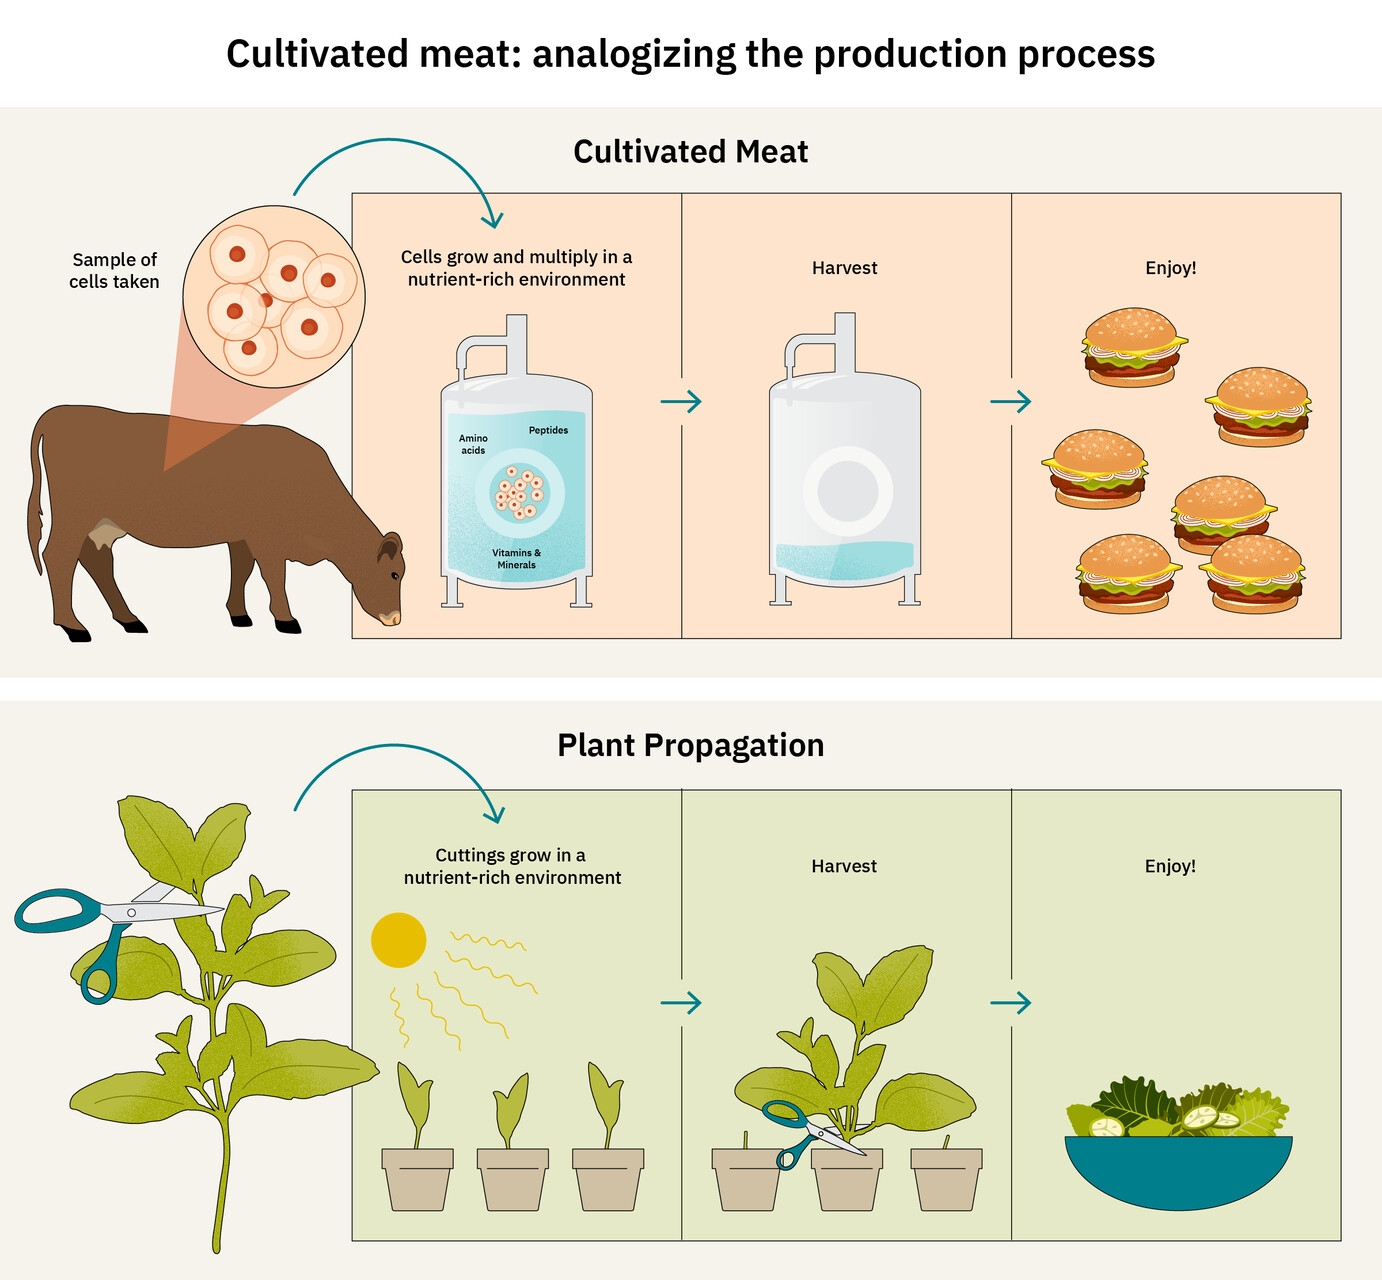 Termesztett hús: a The Good Food Institute Europe infografikája a hústermesztés és a növények közötti hasonlóságokról